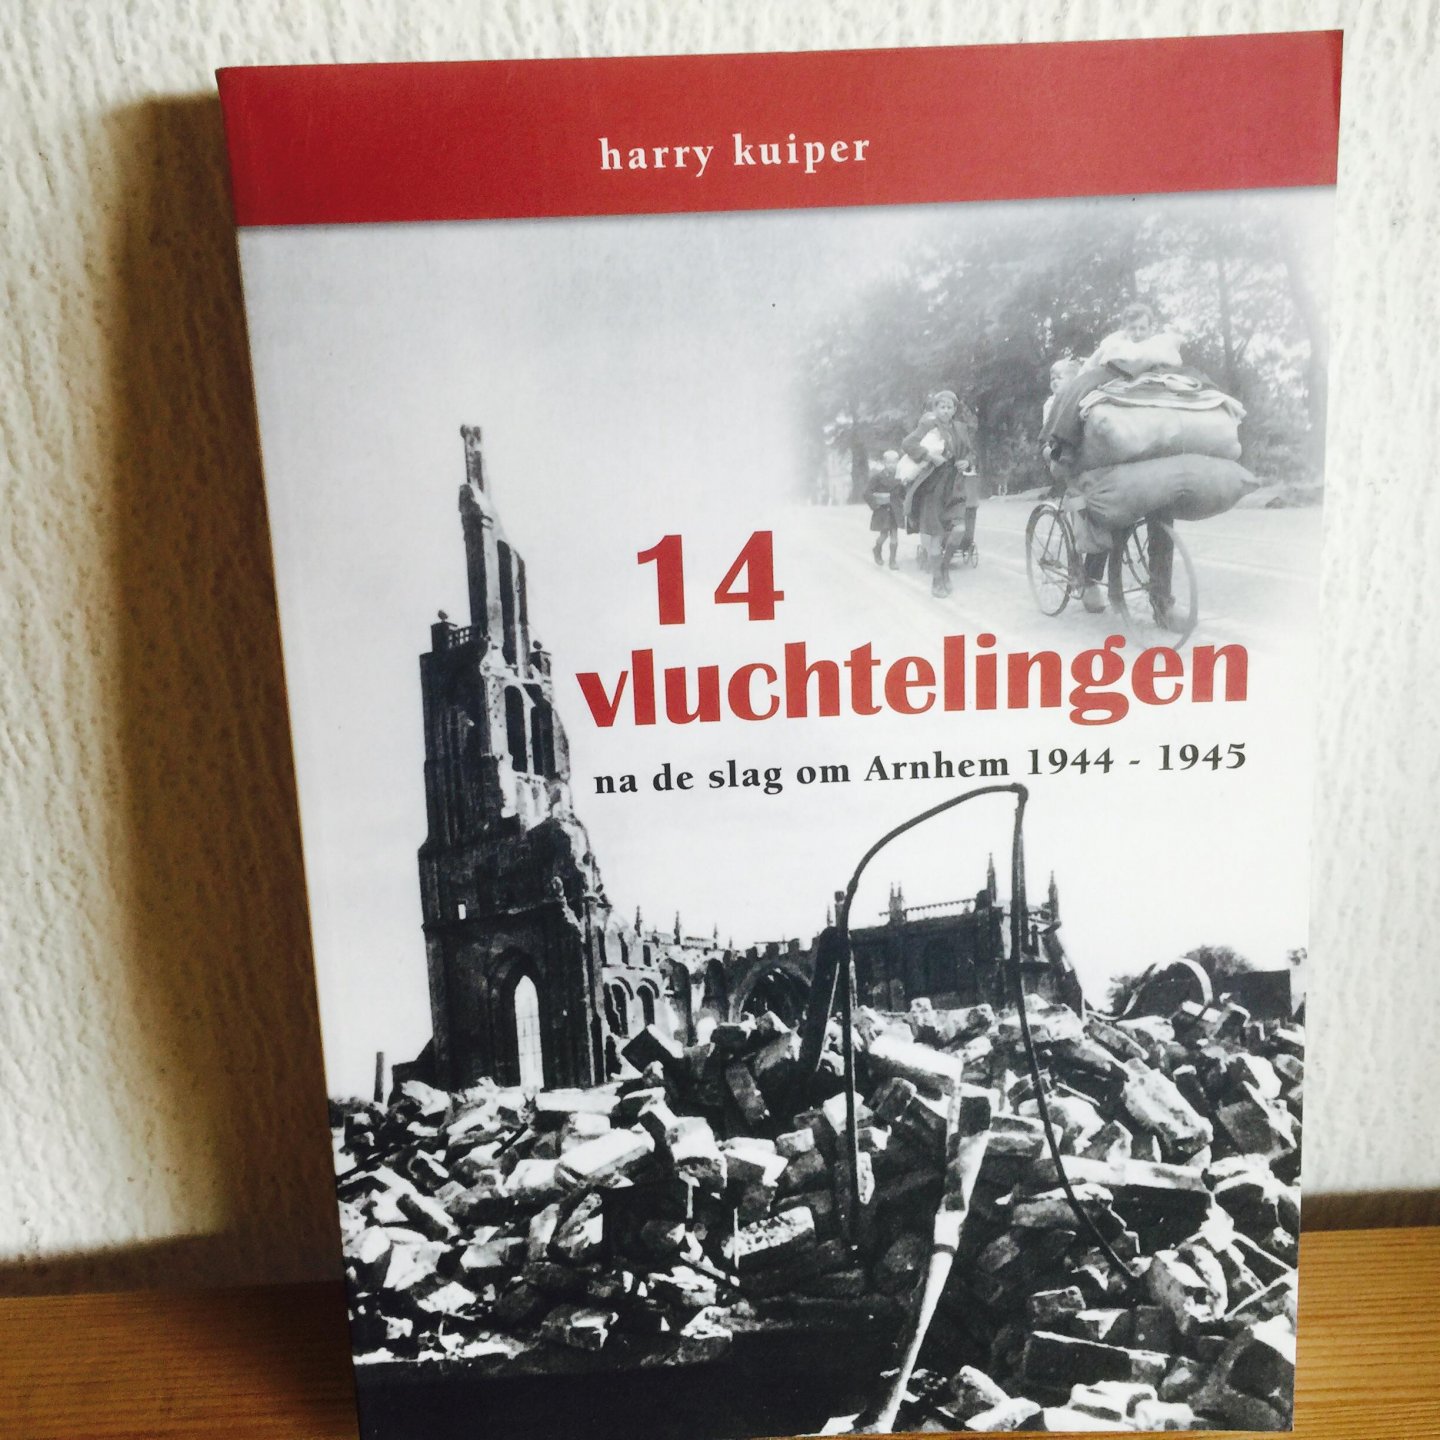 Kuiper, Harry - 14 vluchtelingen, na de slag om Arnhem 1944-1945 / na de slag om Arnhem 1944-1945